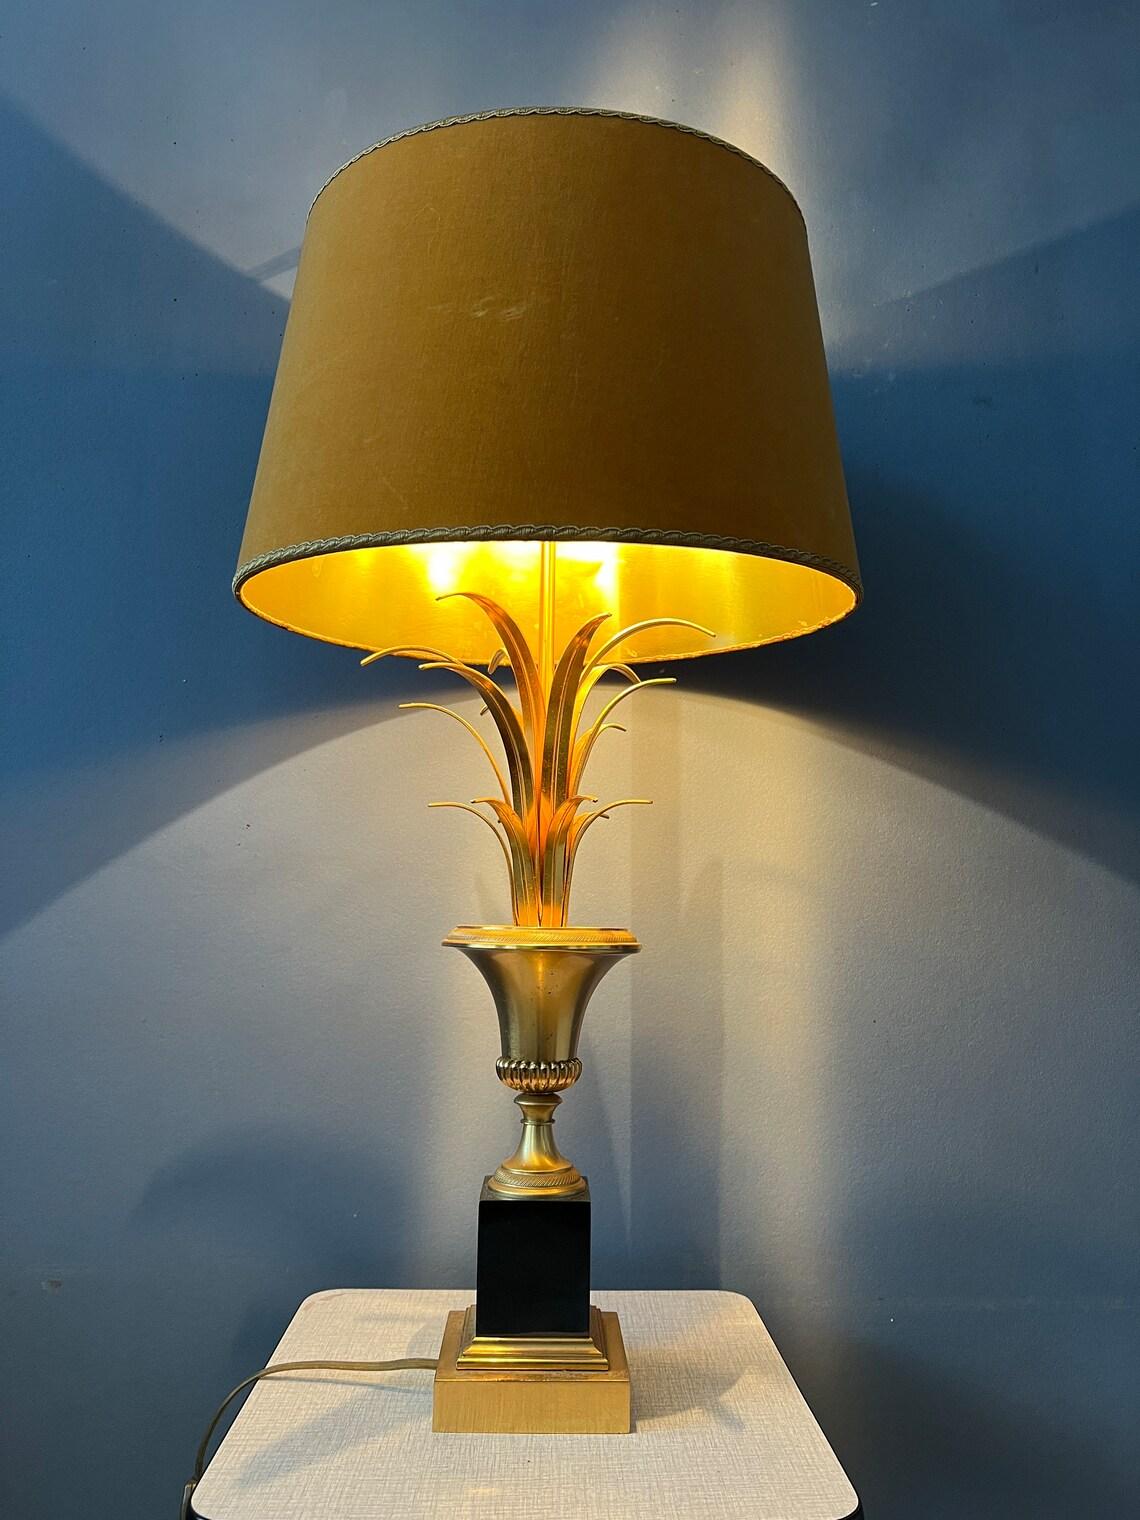 Hollywood-Regency-Tischlampe mit goldenem Sockel. Die Lampe benötigt eine E27/26-Glühbirne und hat derzeit einen EU-Stecker (außerhalb der EU mit Stecker-Konverter verwendbar).

Zusätzliche Informationen:
MATERIALIEN: Baumwolle, Metall
Zeitraum: